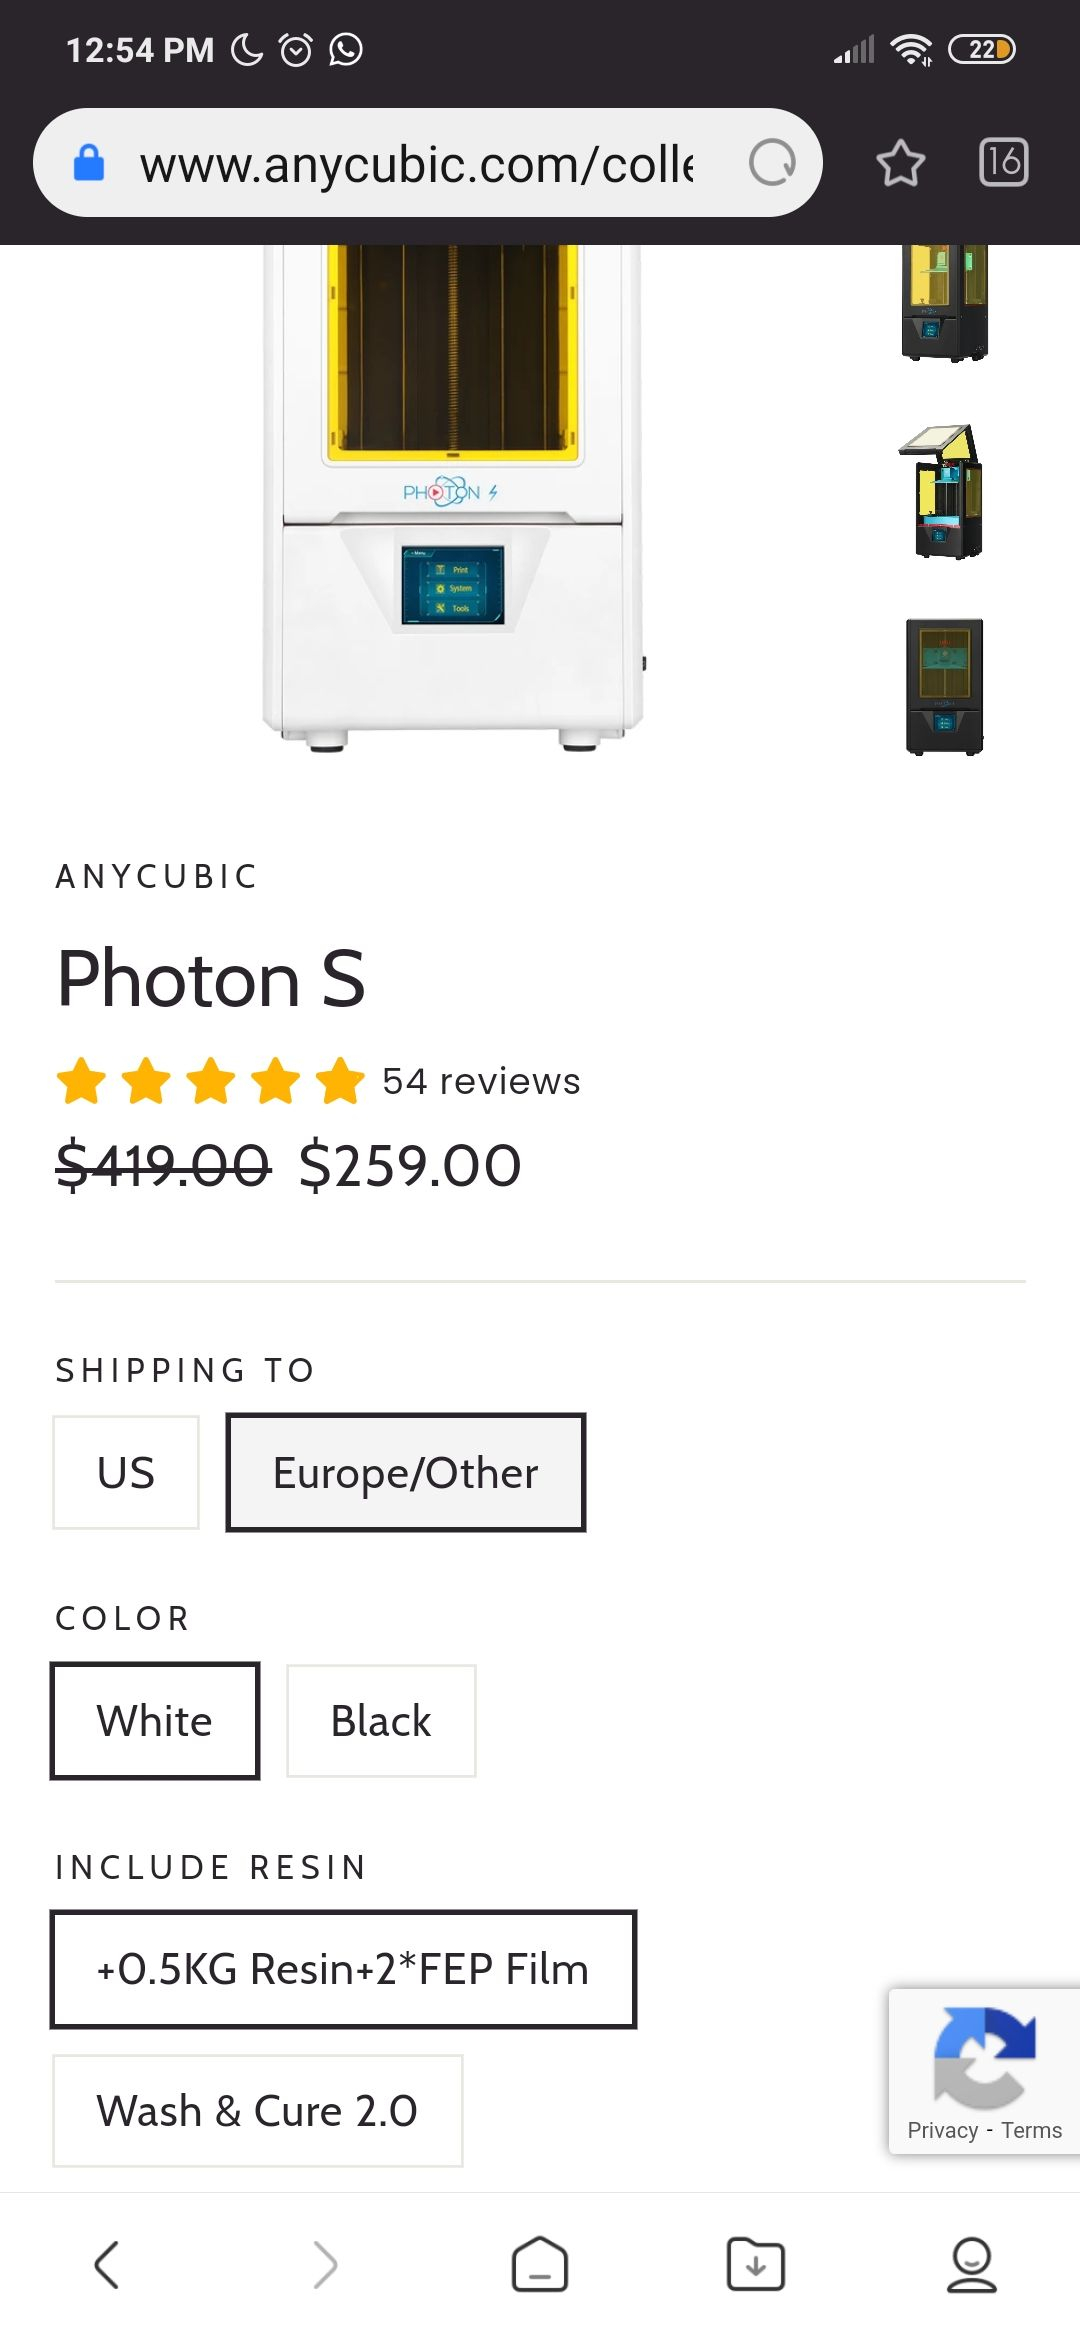 ANYCUBIC: impresora 3d Photon S /precio más envío e impuestos